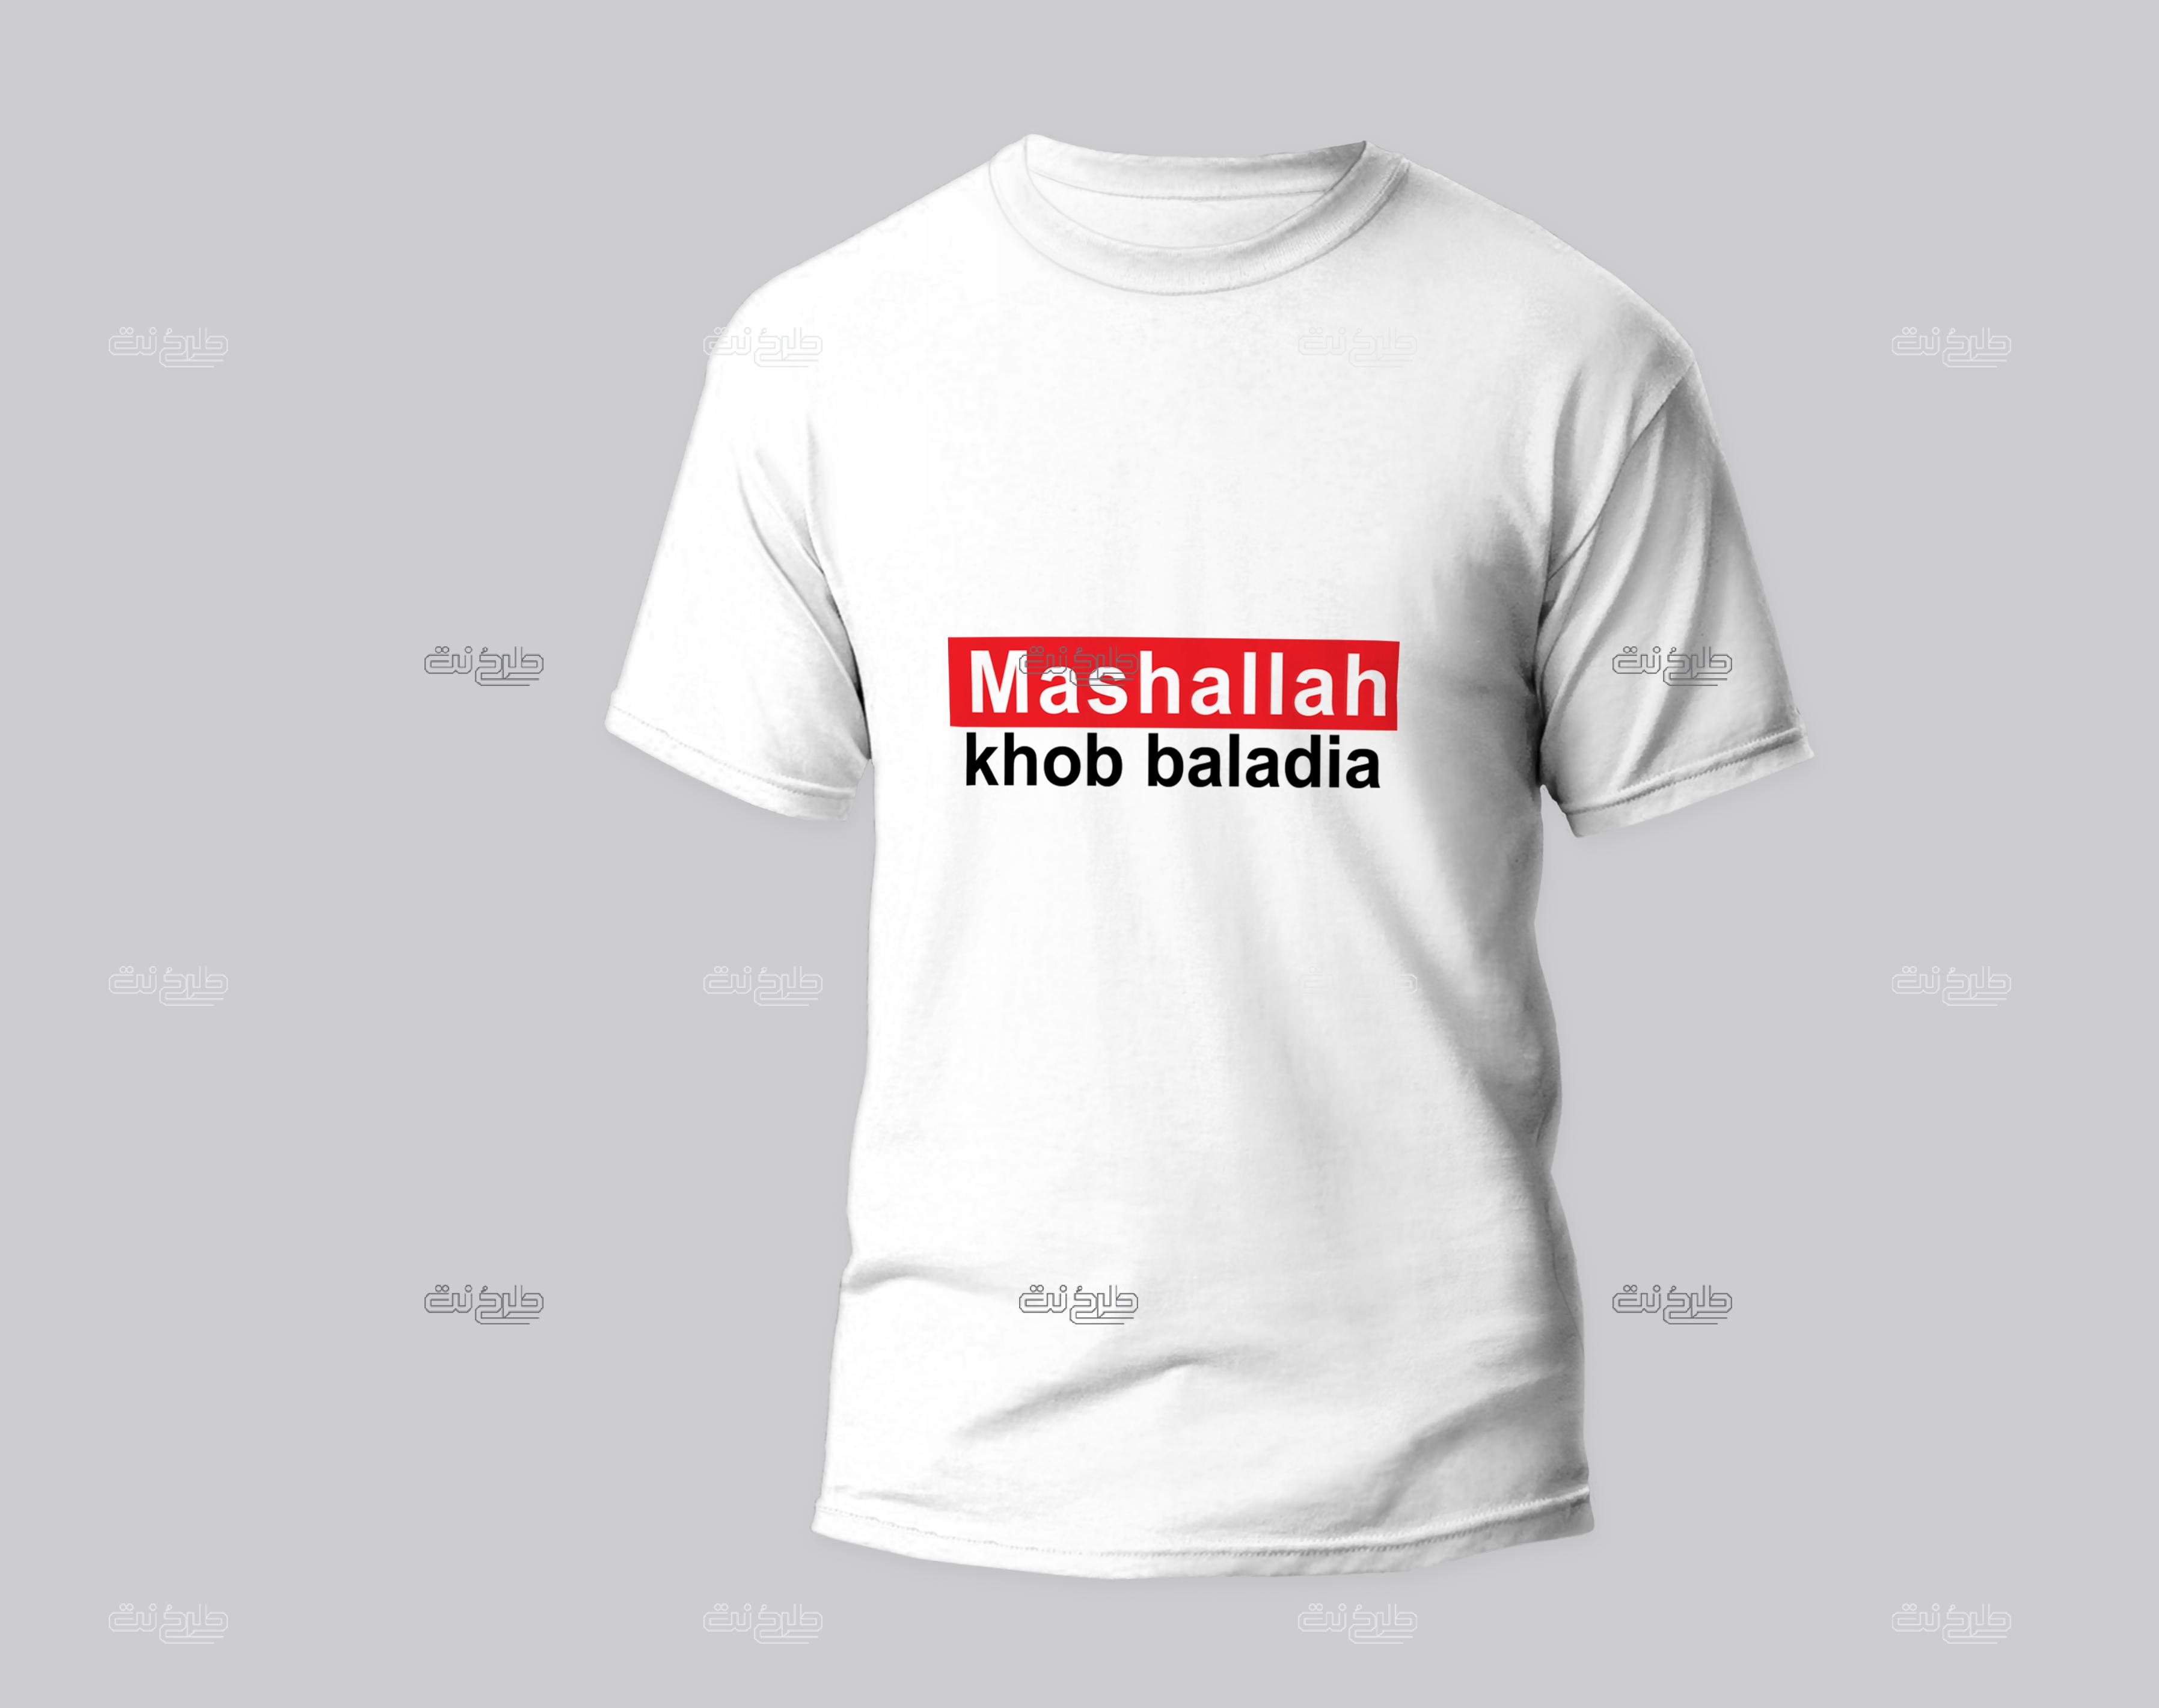 دانلود طرح لایه باز تیشرت با متن "Mashallah khob"